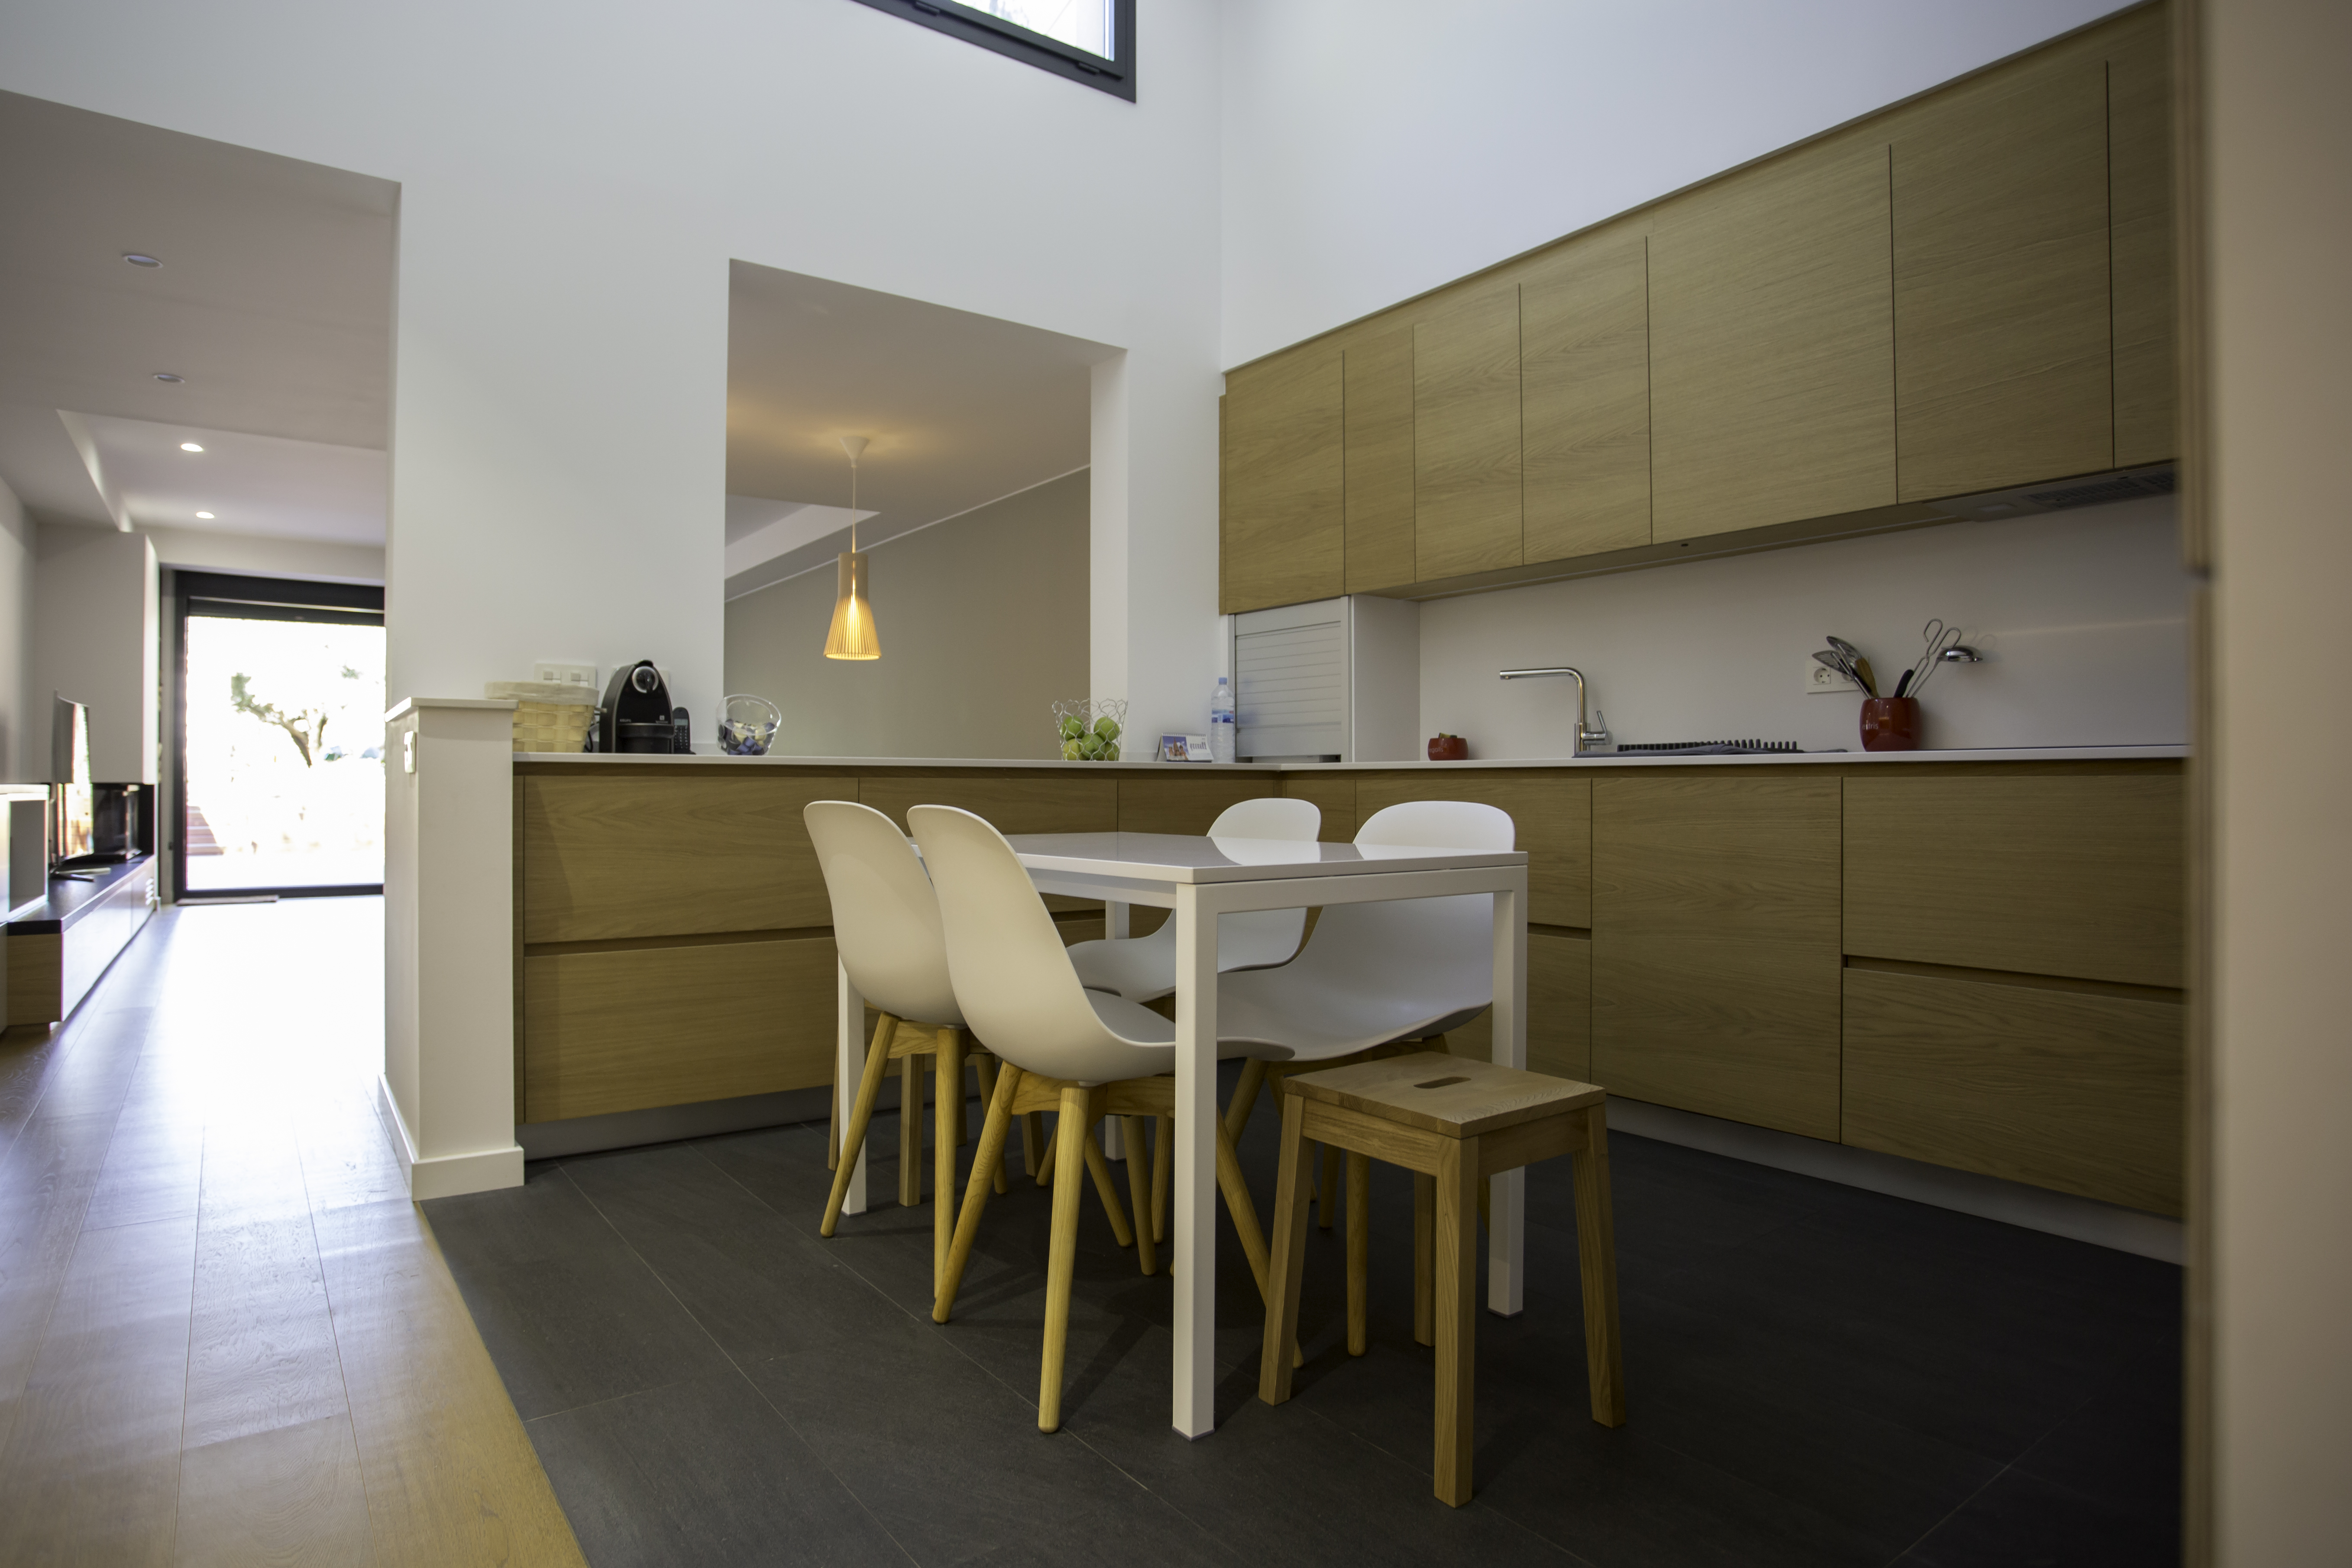 Projecte d'interiorisme: disseny de mobiliari per una casa unifamiliar d'obra nova. 